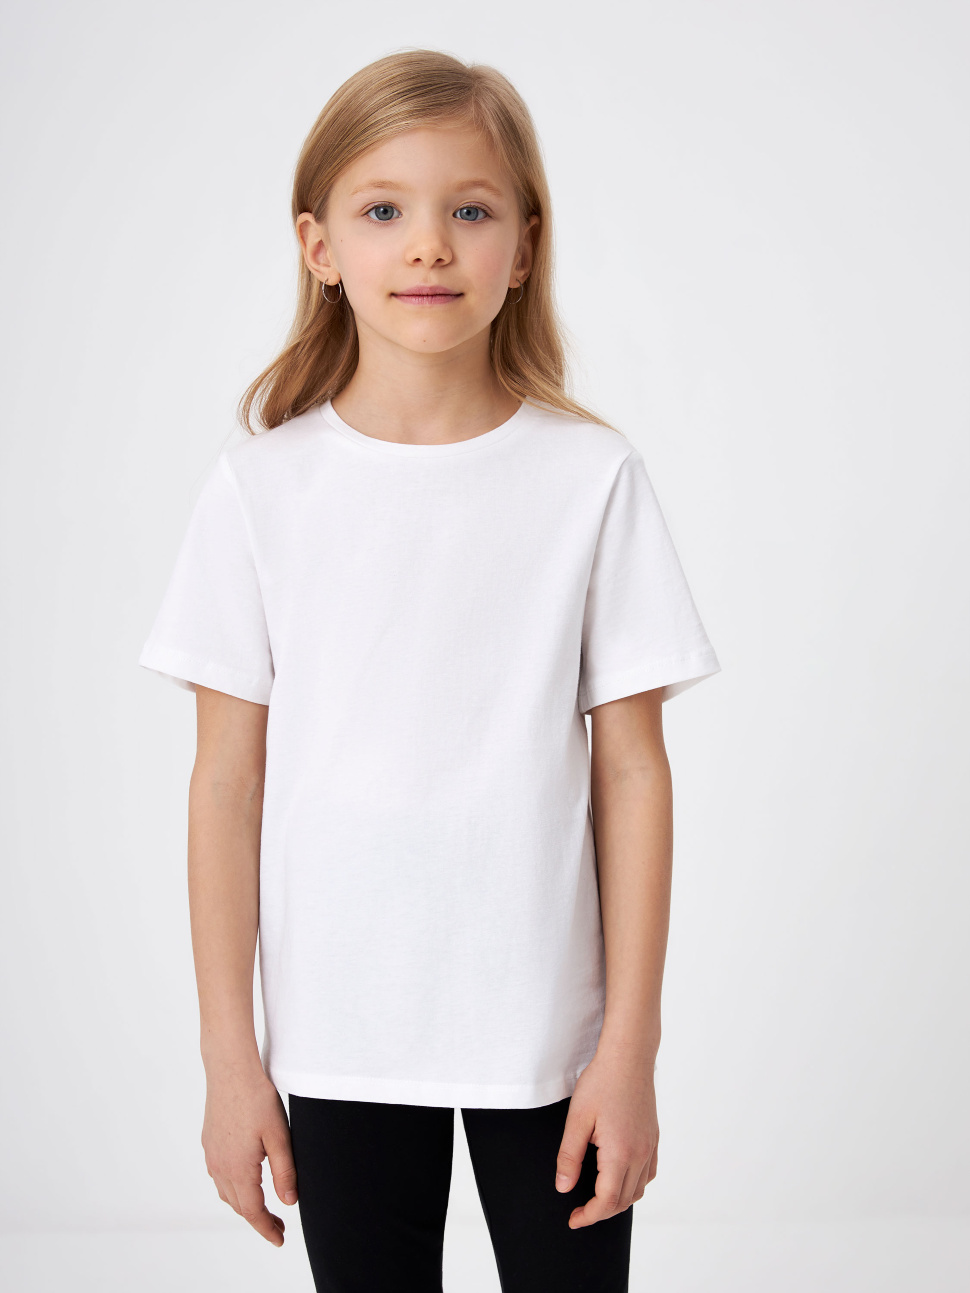 Базовая белая футболка детская 3801050231-1 цв. белый р.128